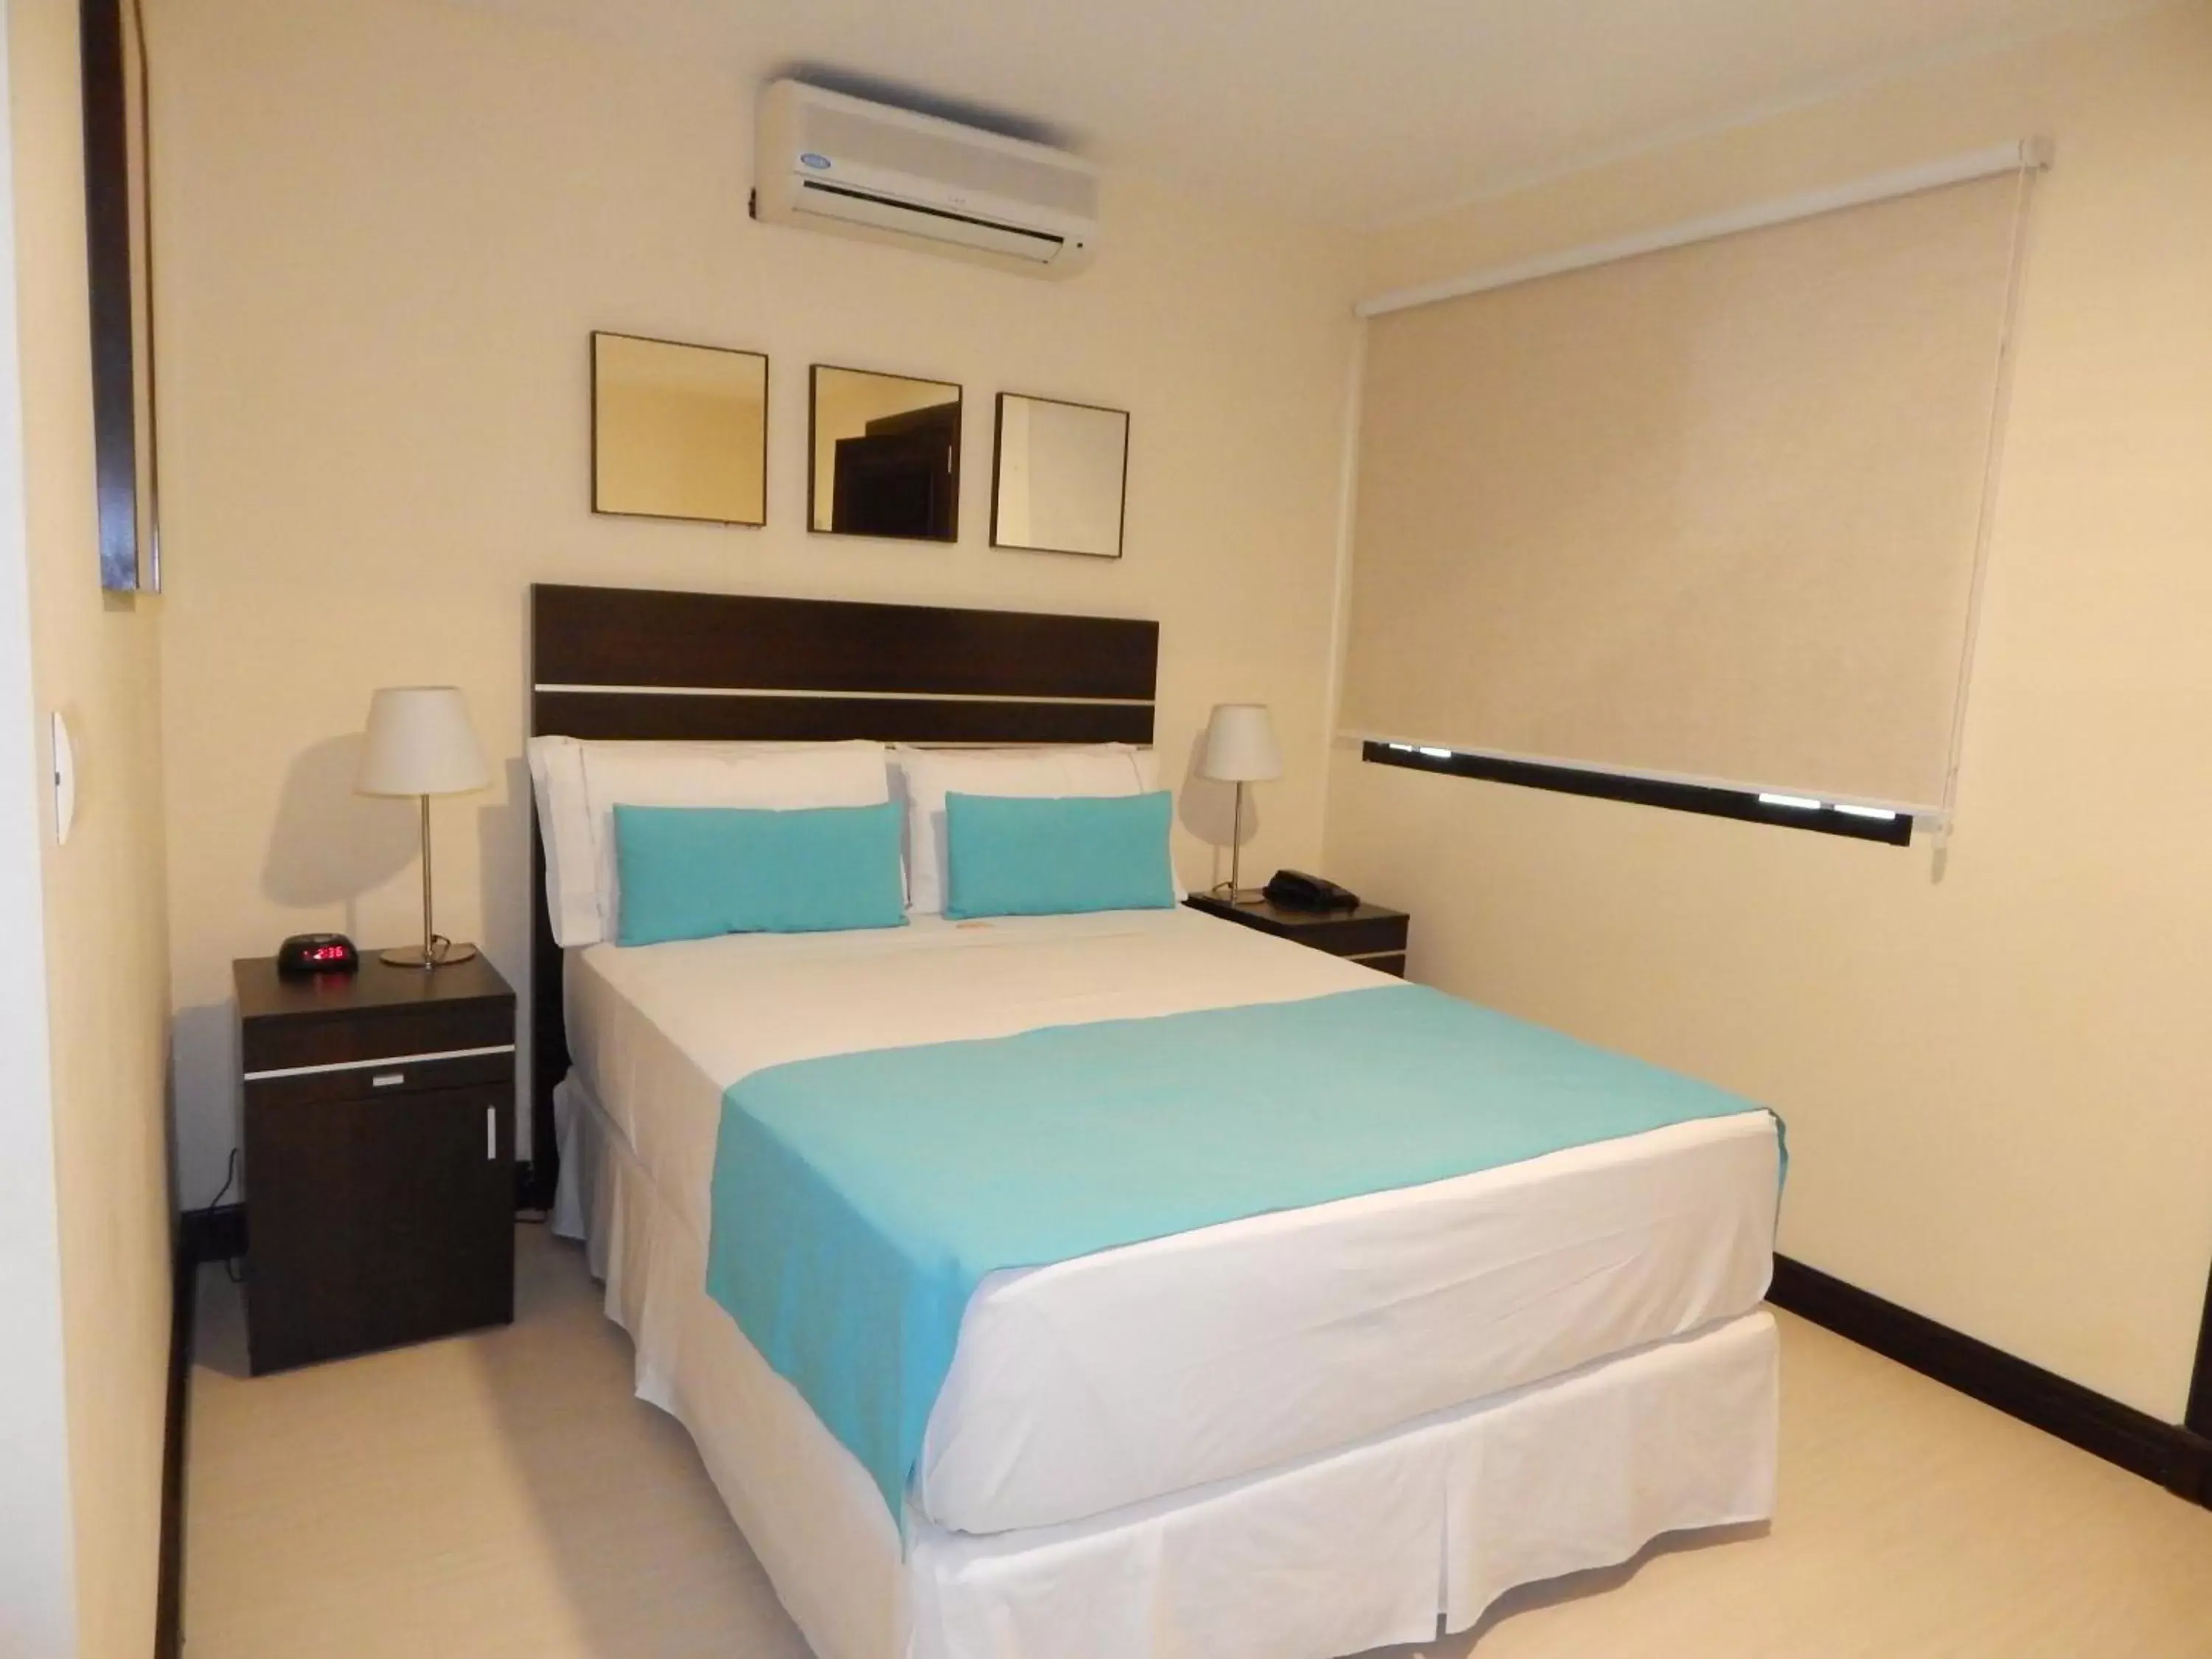 Standard Double Room in Puerto Mercado Hotel